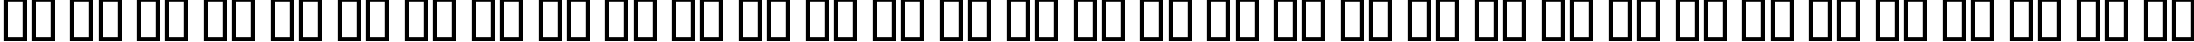 Пример написания русского алфавита шрифтом BigNoodleTitling